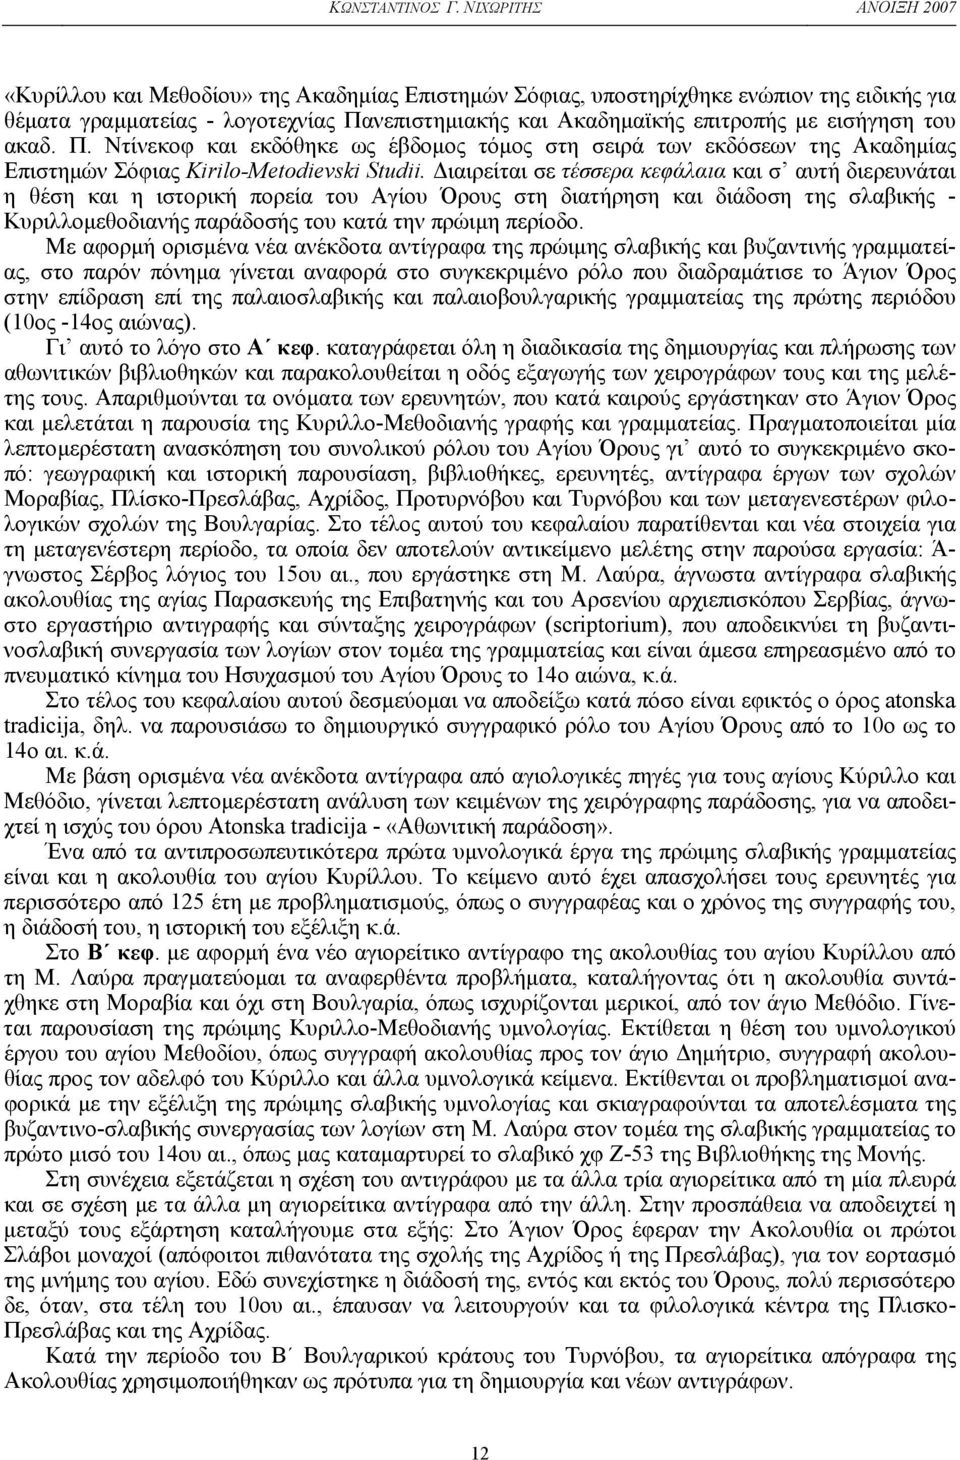 εισήγηση του ακαδ. Π. Nτίνεκοφ και εκδόθηκε ως έβδοµος τόµος στη σειρά των εκδόσεων της Aκαδηµίας Eπιστηµών Σόφιας Kirilo-Metodievski Studii.